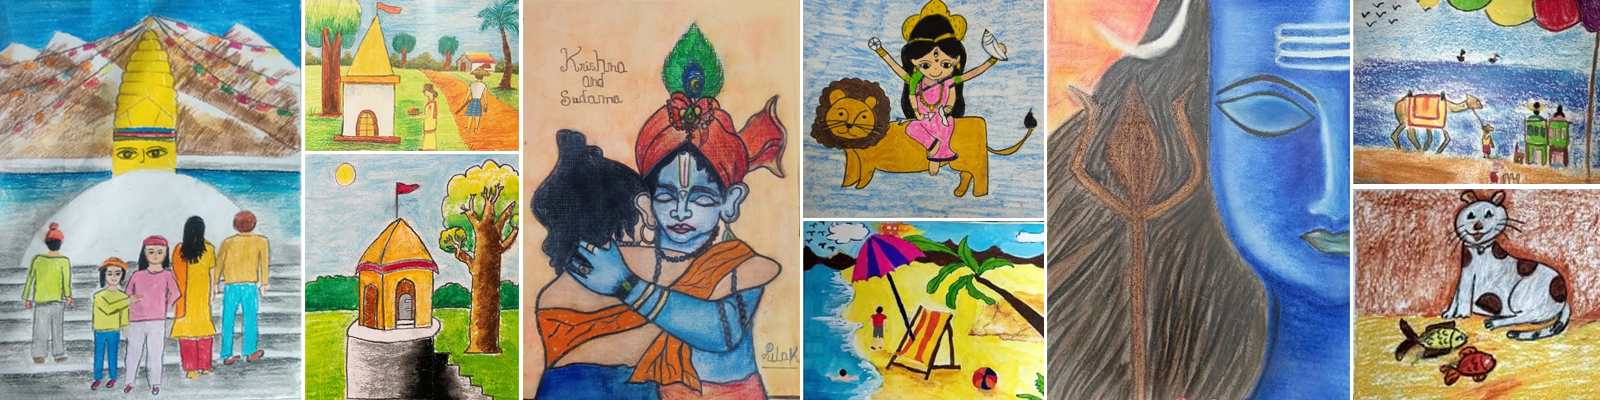 Nakshatra- Primary Level Basic Course in Visual Art